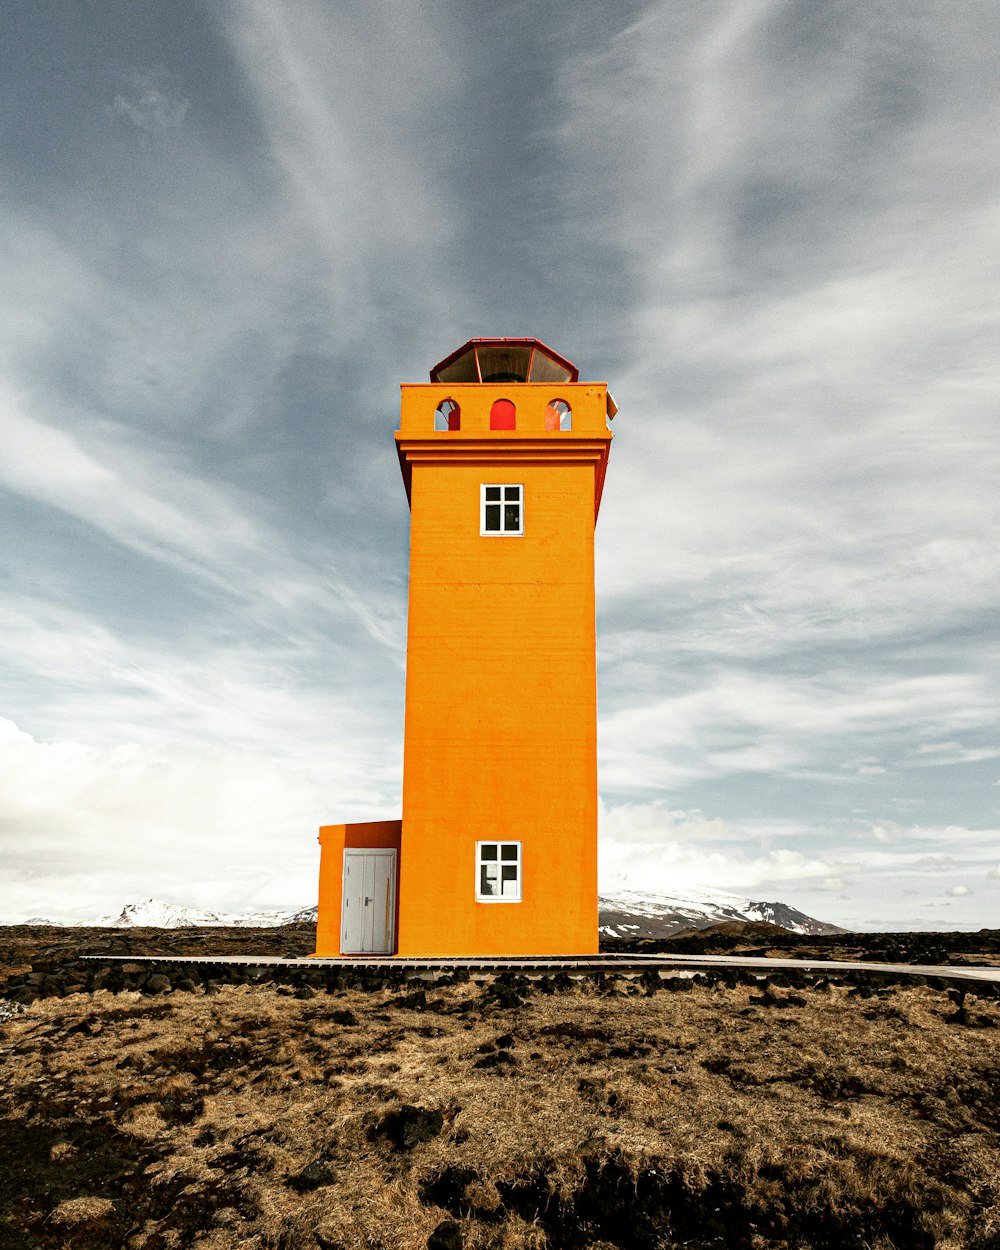 a lighthouse on a beach